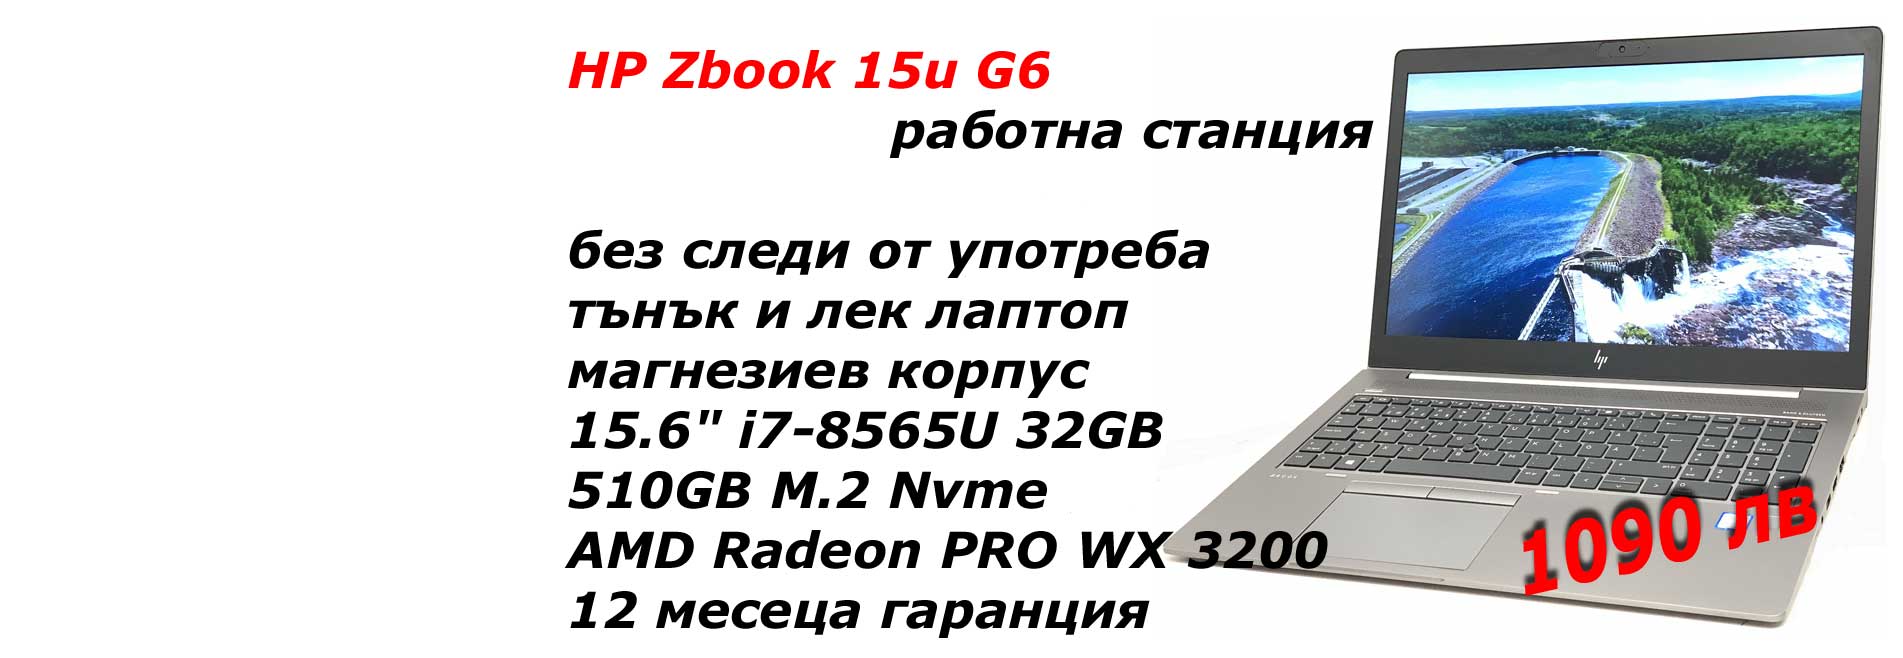 HP Zbook 15u G6